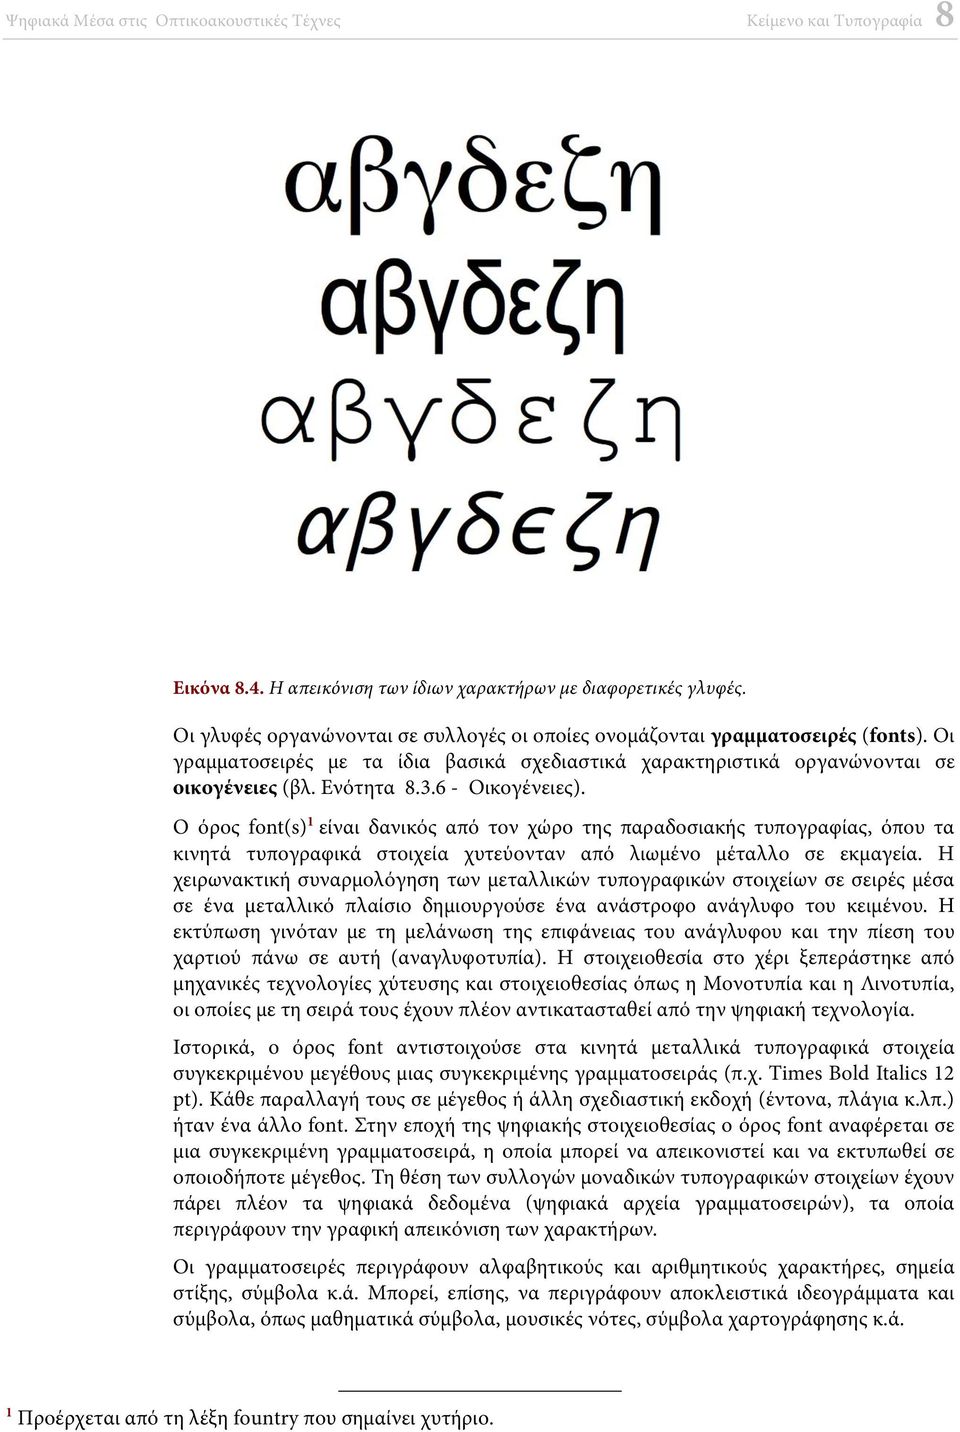 Ο όρος font(s) 1 είναι δανικός από τον χώρο της παραδοσιακής τυπογραφίας, όπου τα κινητά τυπογραφικά στοιχεία χυτεύονταν από λιωμένο μέταλλο σε εκμαγεία.